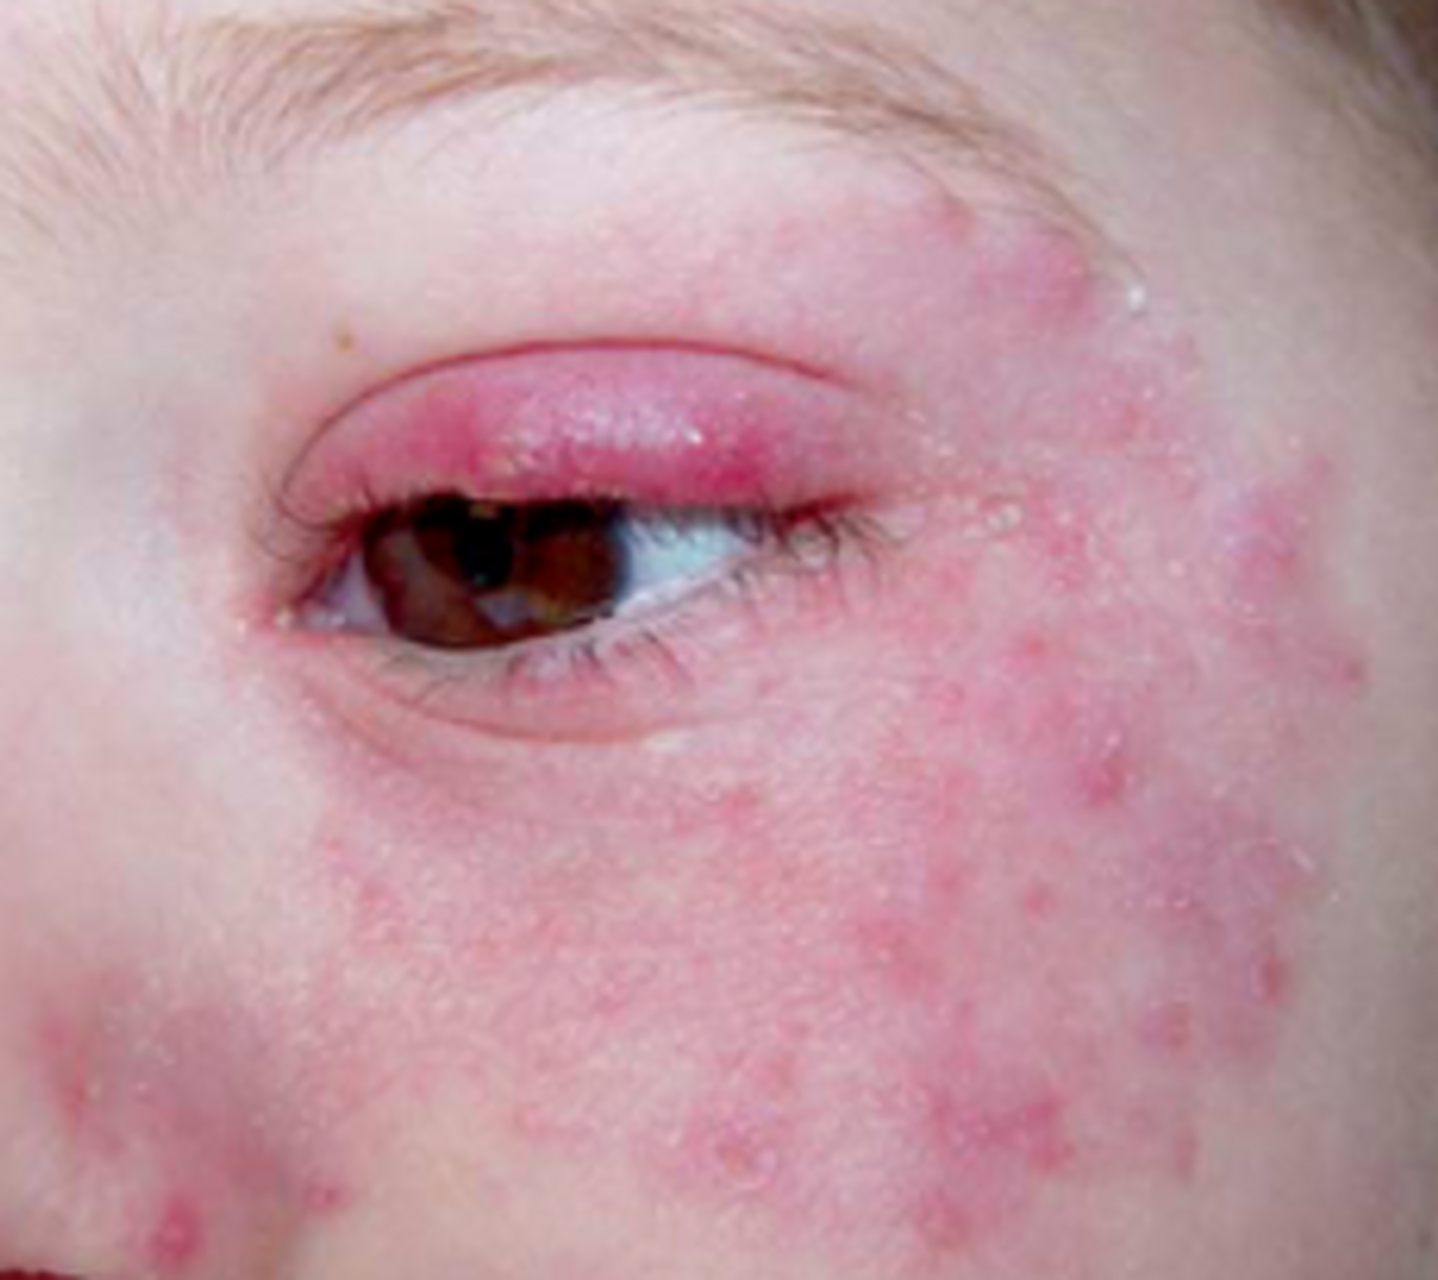 儿童皮肤癣菌感染的常见类型包括头癣,体股癣,面癣,手足癣等,其